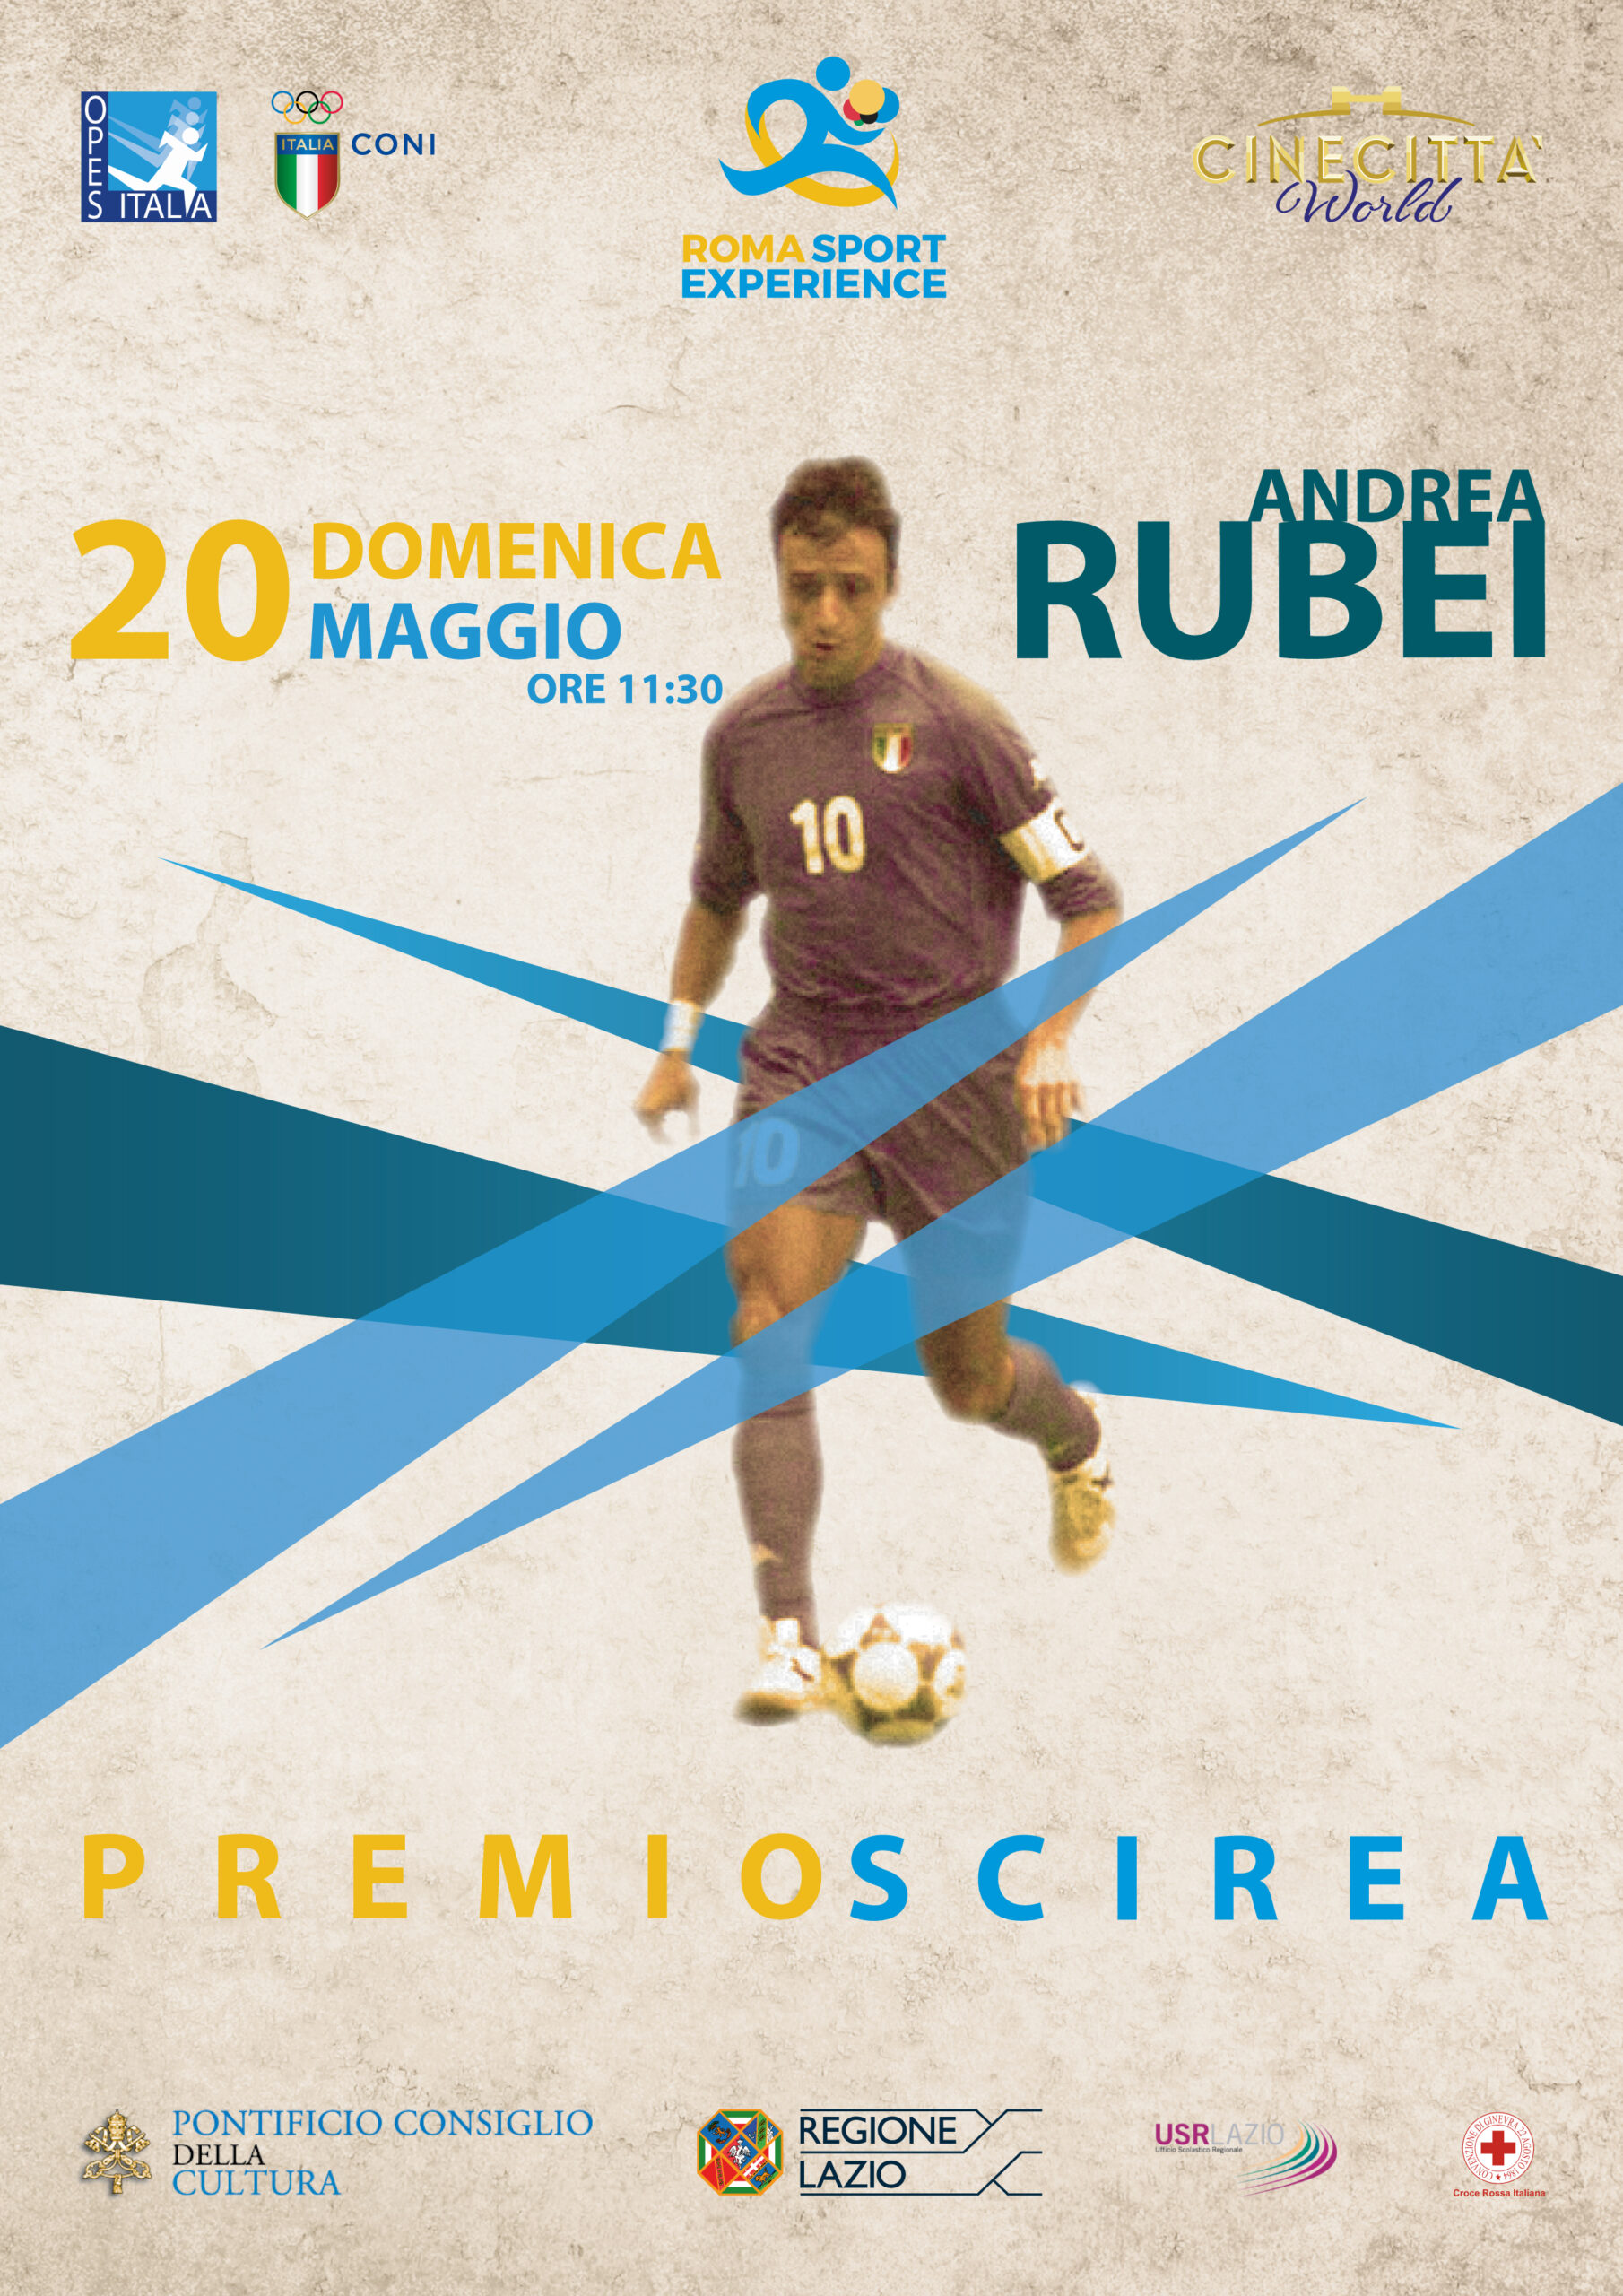 Scopri di più sull'articolo Roma Sport Experience: “Premio Scirea” ad Andrea Rubei, la leggenda del futsal